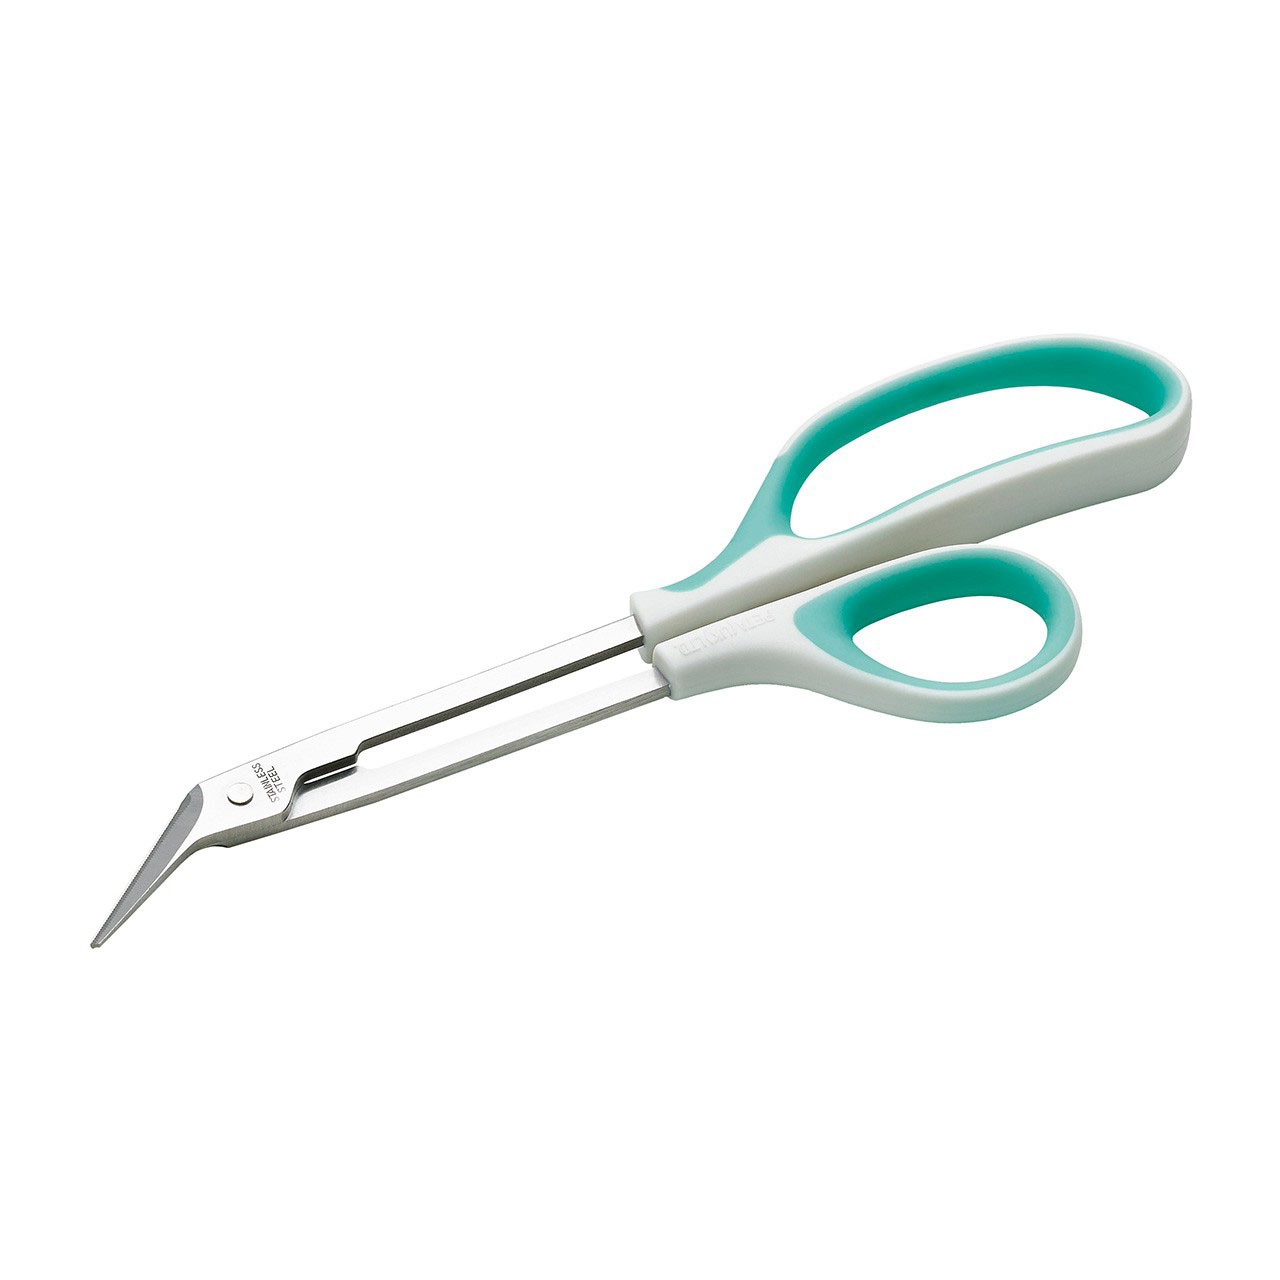 Long Reach Toenail Scissors